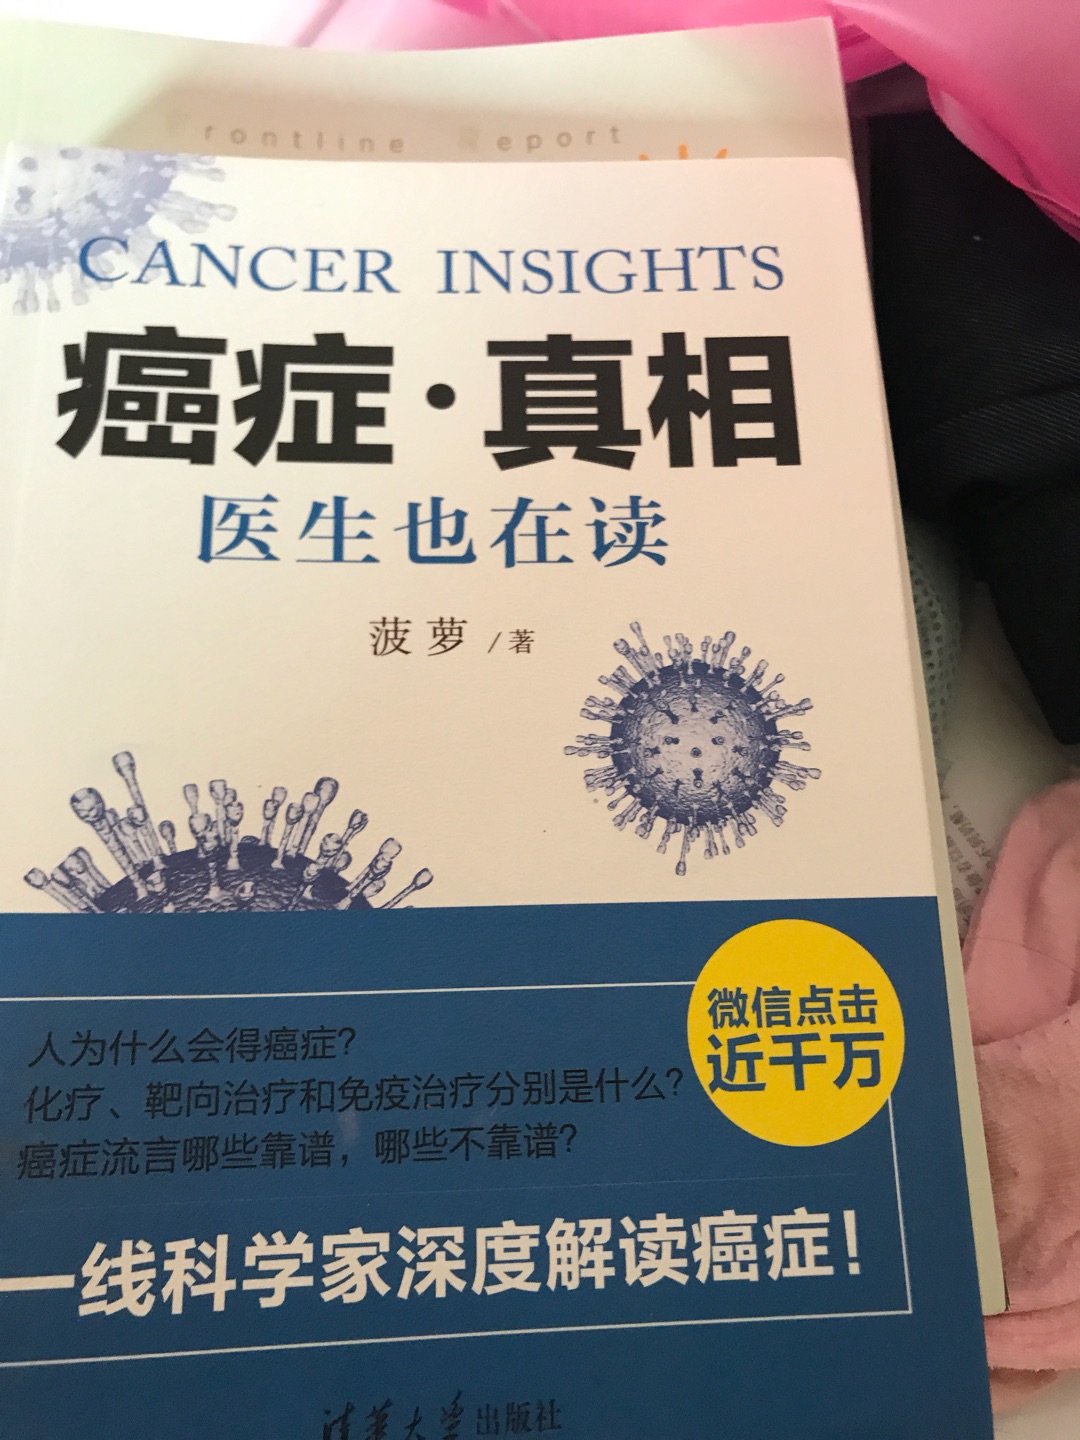 最新的知识，多多学习，不再谈癌色变。